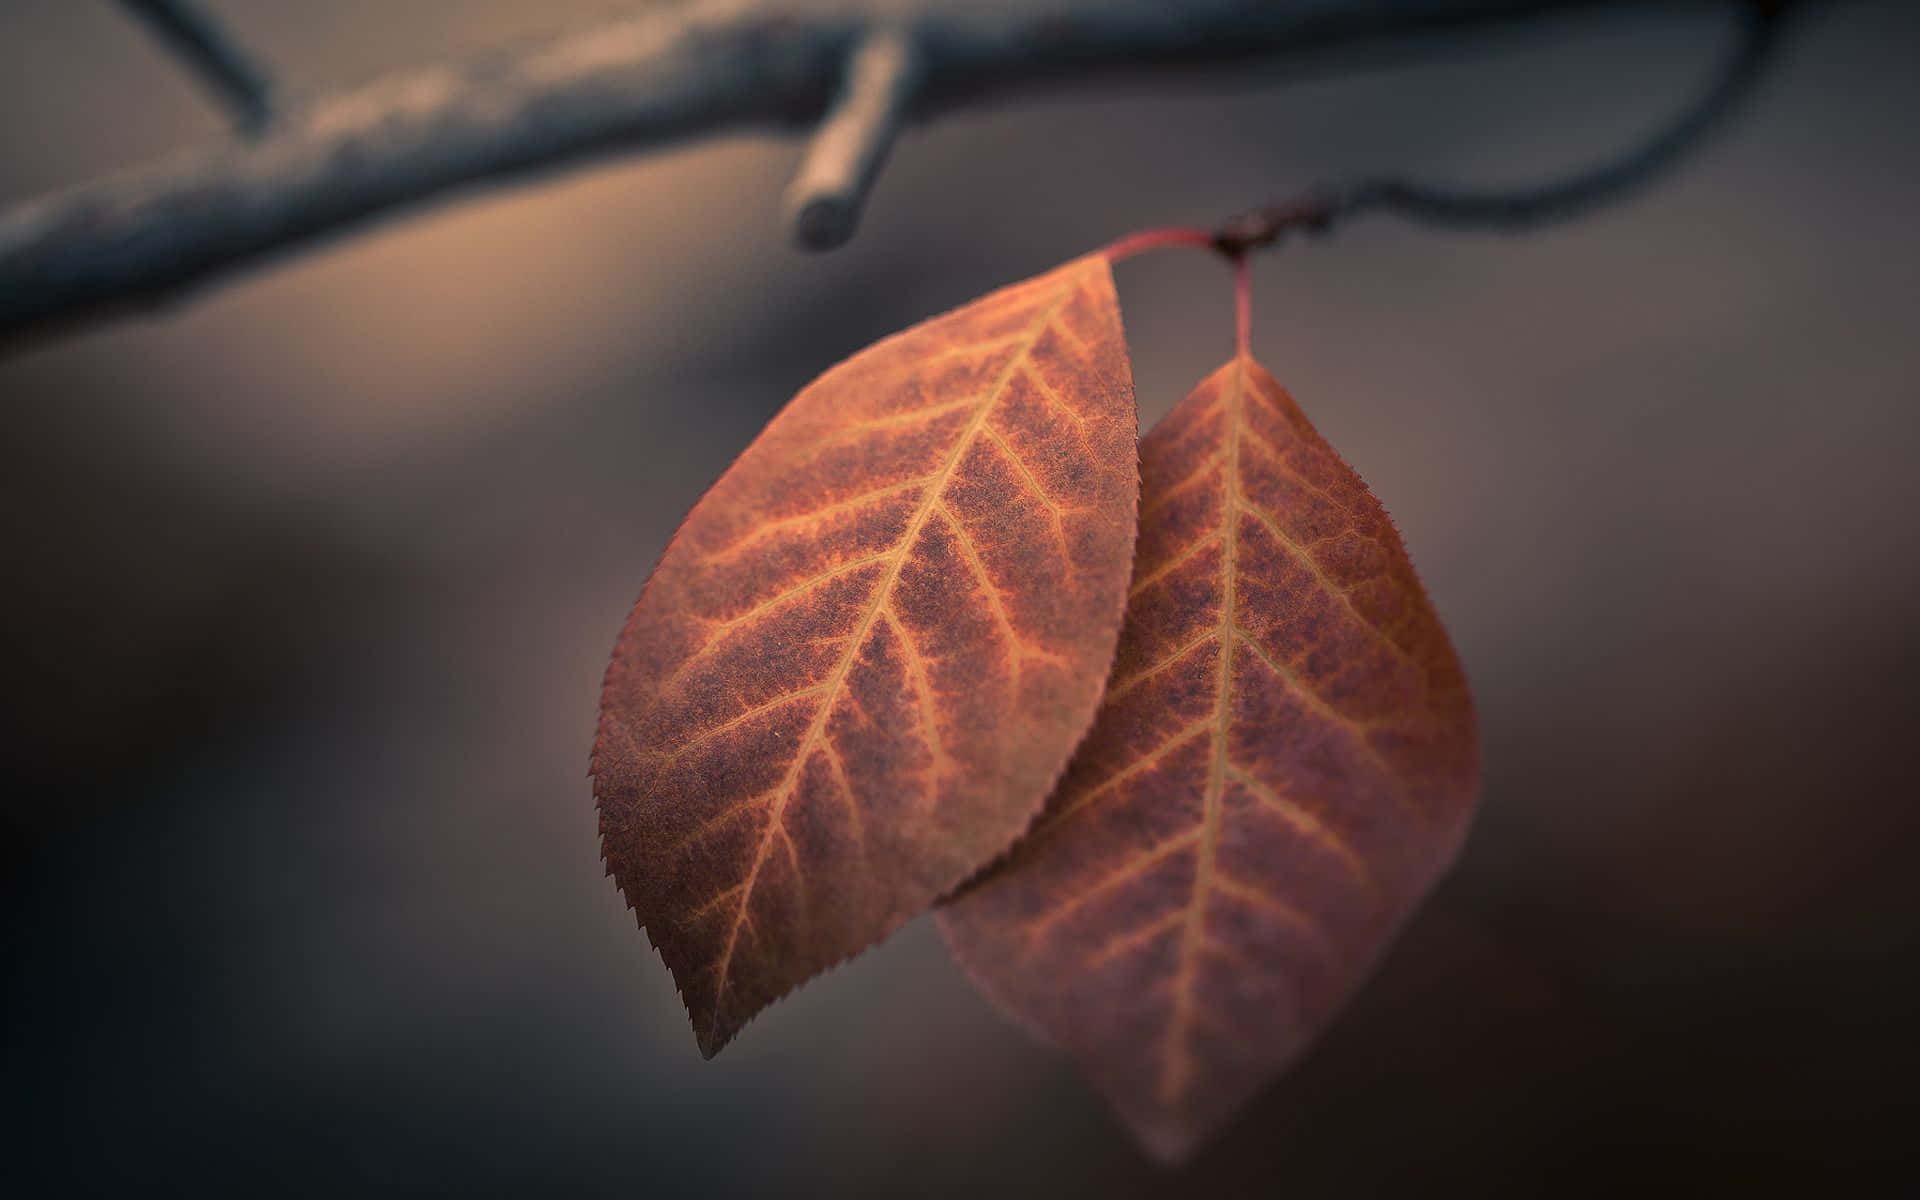 Brown Leaves Wallpaper